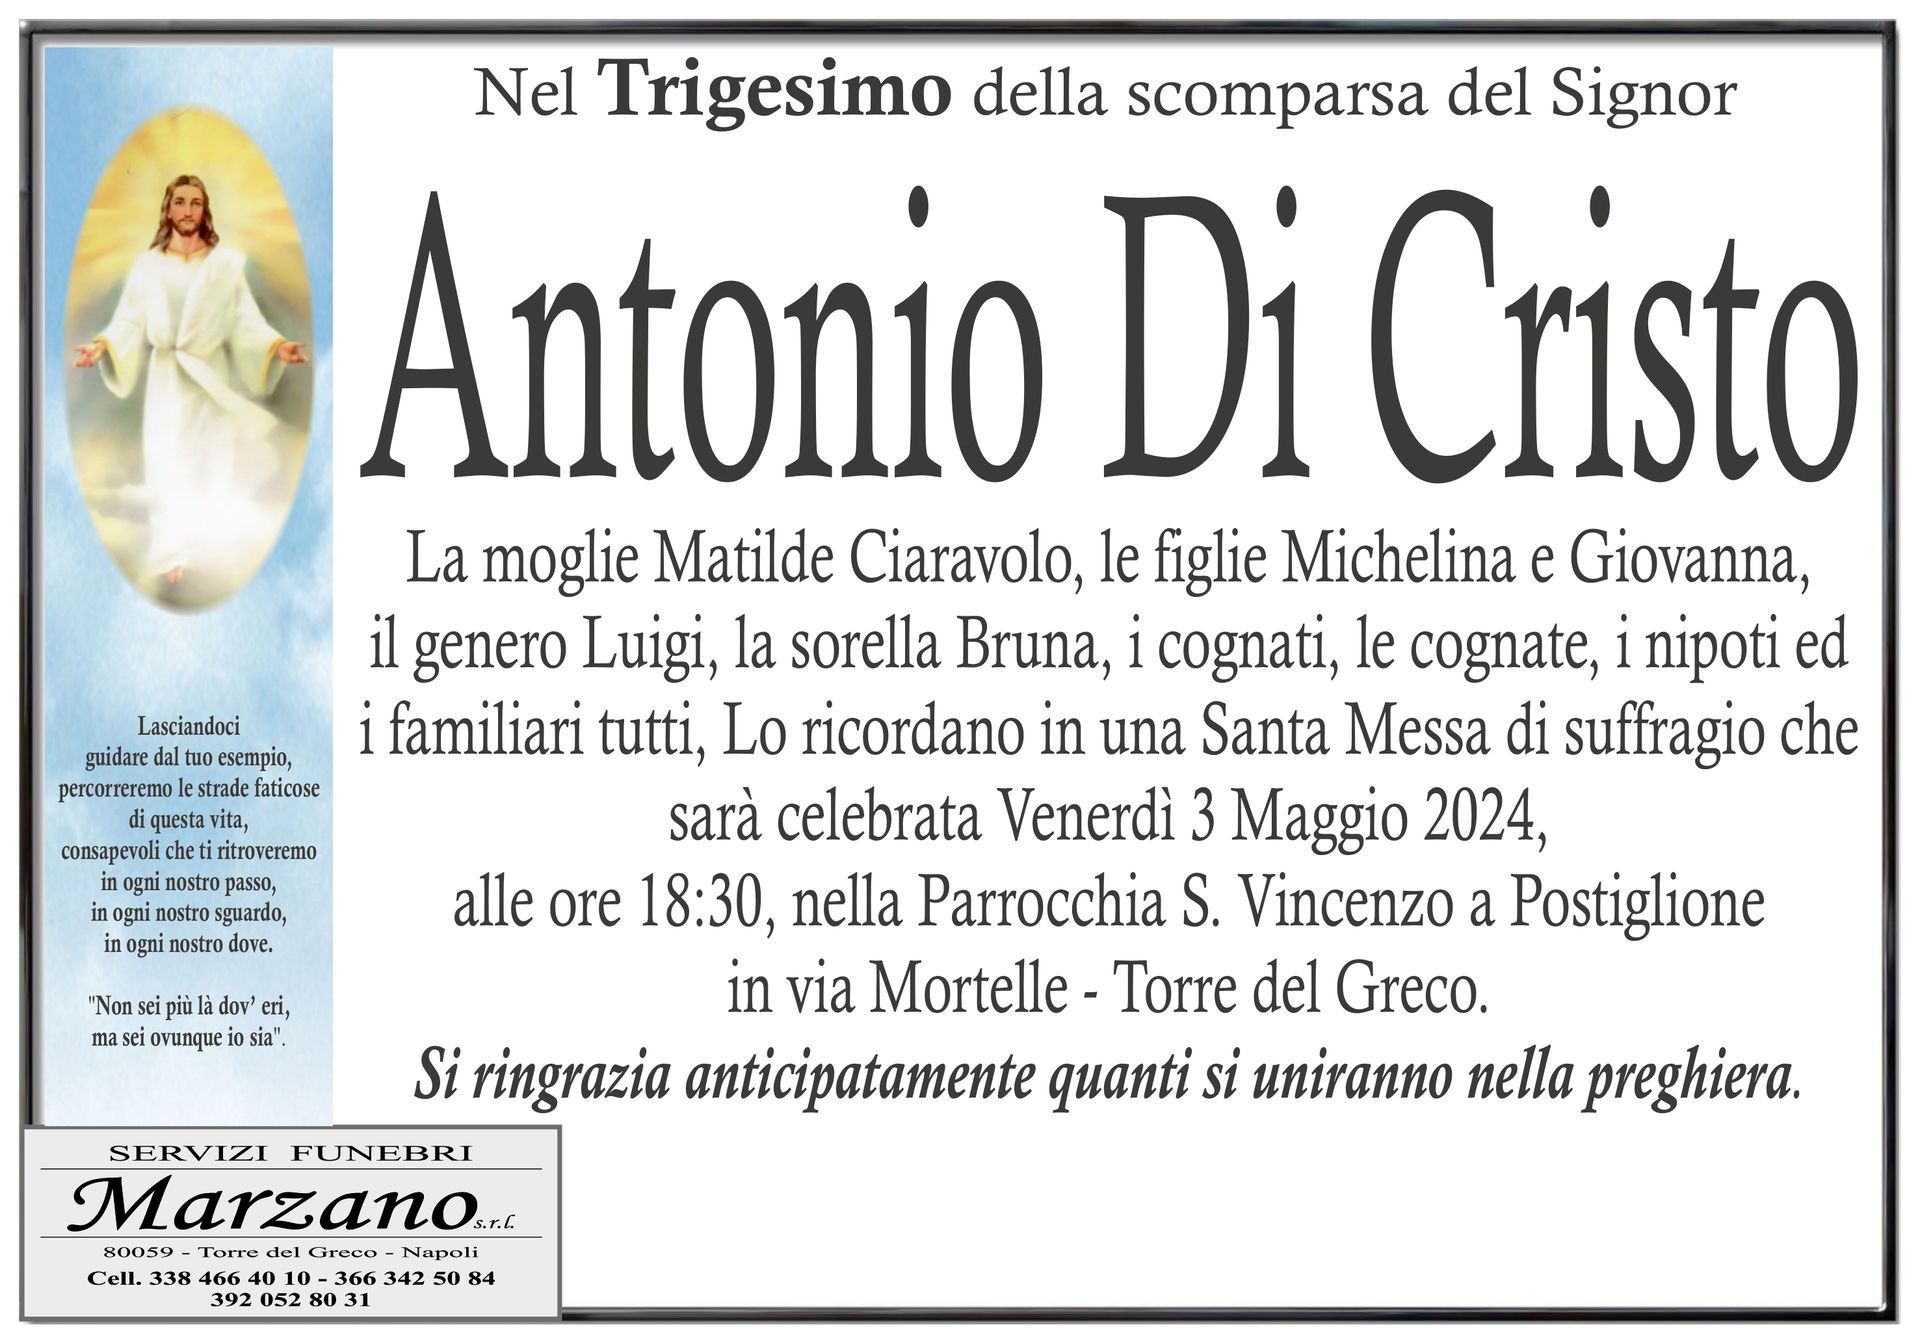 Antonio Di Crsito